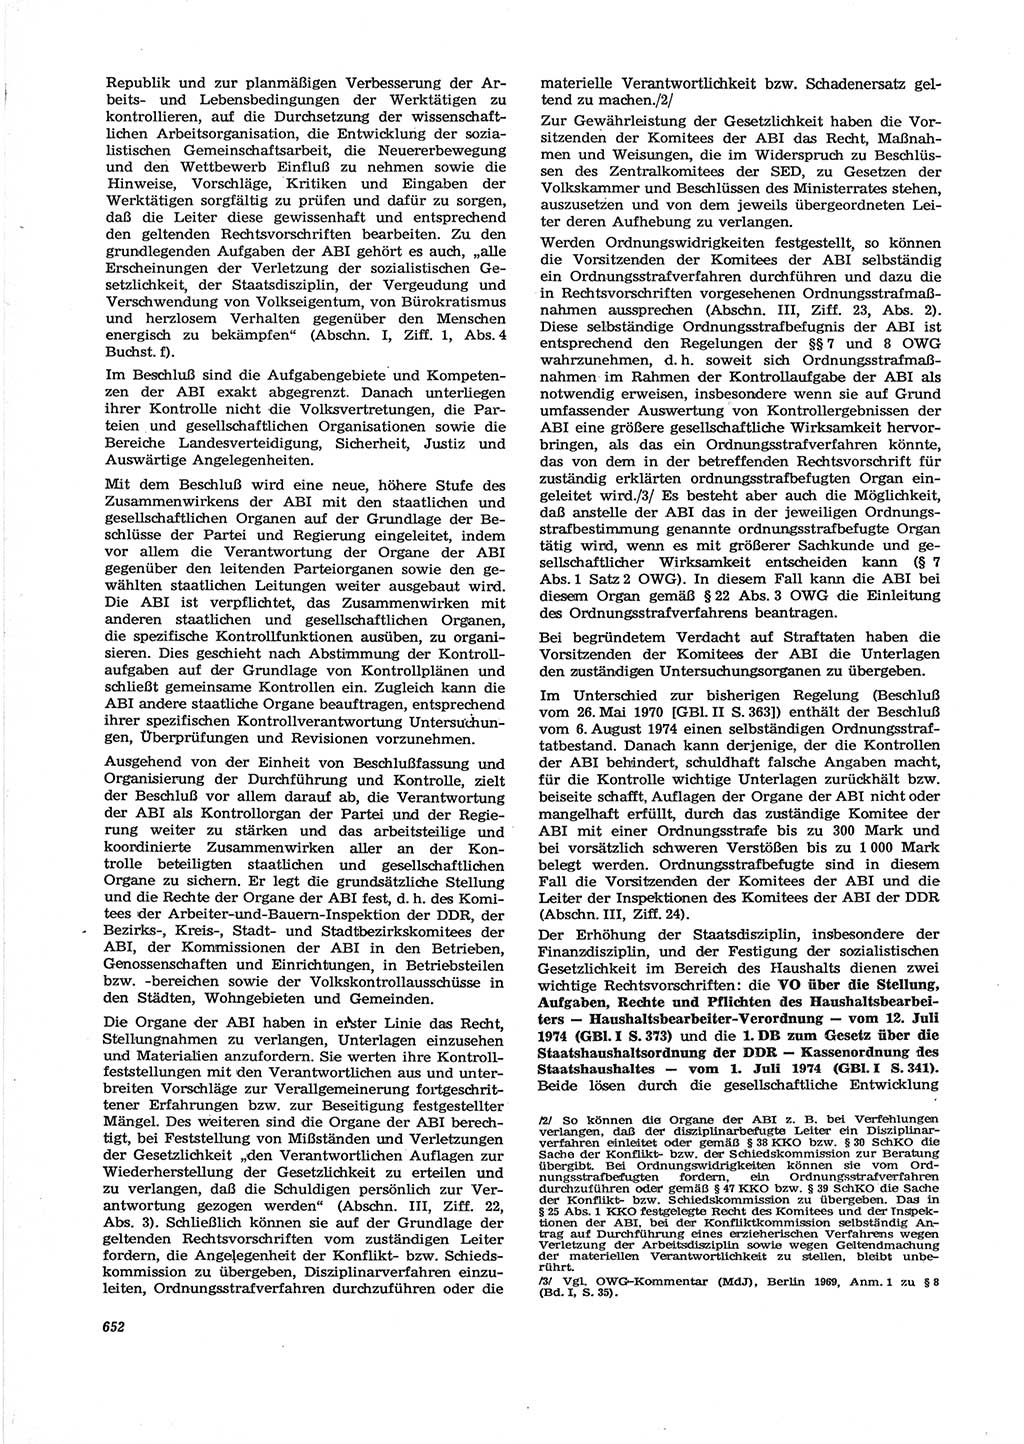 Neue Justiz (NJ), Zeitschrift für Recht und Rechtswissenschaft [Deutsche Demokratische Republik (DDR)], 28. Jahrgang 1974, Seite 652 (NJ DDR 1974, S. 652)